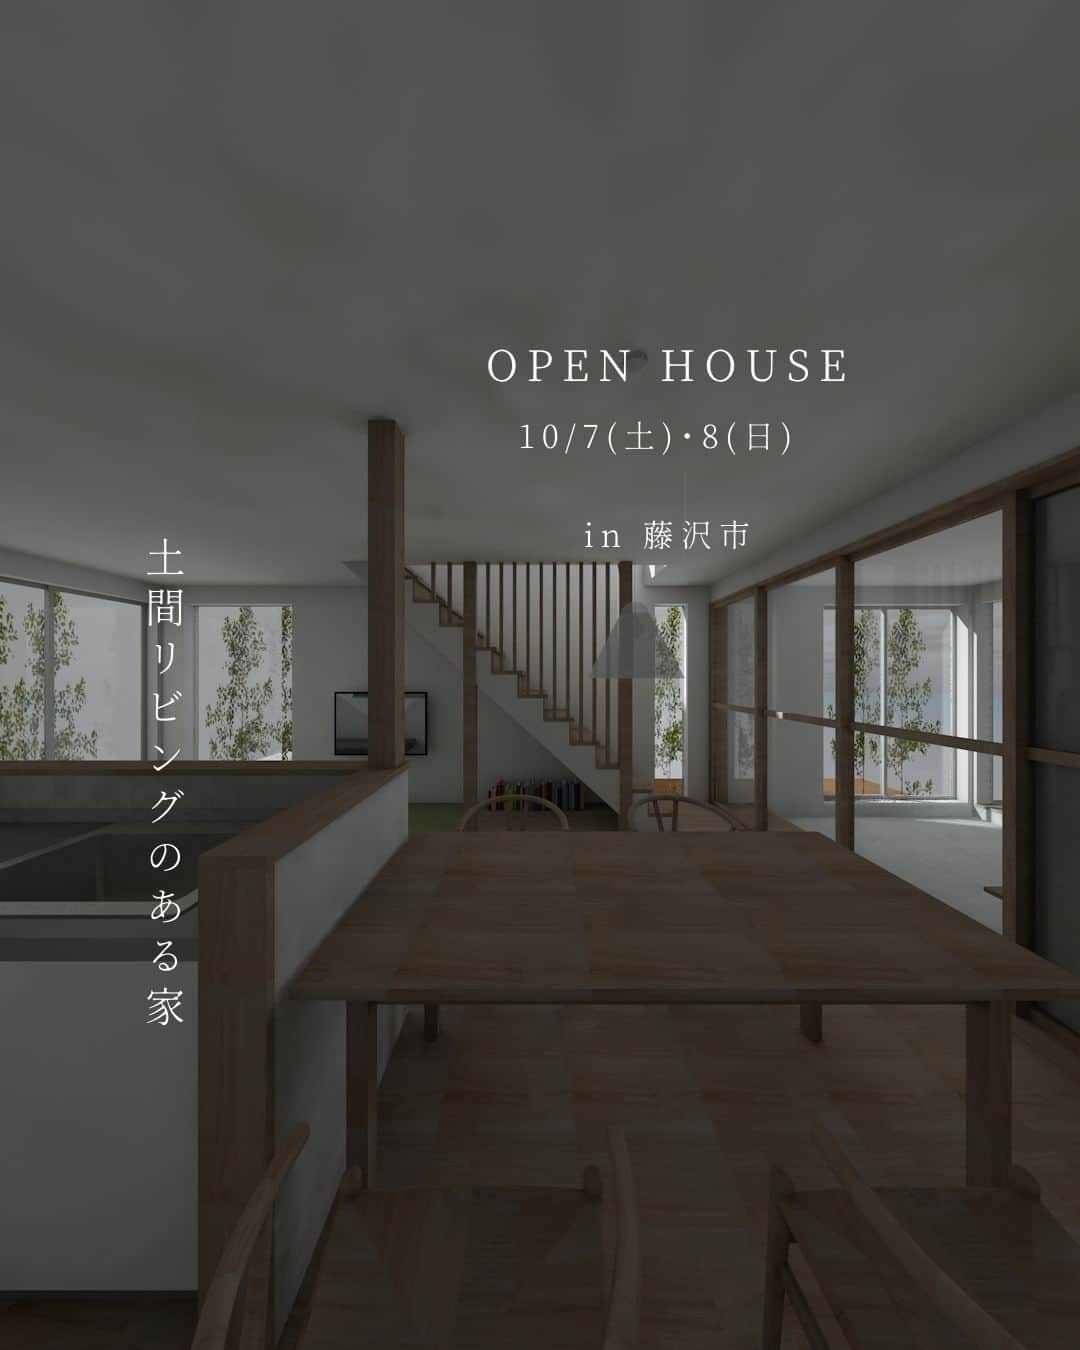 RayCraft / 加藤工務店のインスタグラム：「＜完成見学会のお知らせ＞  10/7（土）・10/8（日）の2日間、神奈川県藤沢市にて、新築一戸建て住宅「土間リビングのある家」の完成見学会を開催いたします。  「自分らしい暮らし」をご提案する「レイクラフト」ならではの家づくりをご体感いただける貴重な機会です。この機会にぜひご来場いただければと思います。  ご予約の際は、大変お手数をおかけいたしますが「https://kato-koumuten.com/event-reservation/」にアクセスしていただき、お申込みくださいますよう、よろしくお願いいたします。（※ご入力いただきました、お電話番号へのショートメール、もしくは、メールアドレス宛てに、ご予約完了通知および、詳細所在地等をお送りさせていただきます。）  ◎見学日時 ※ 10月7日（土）・8日（日） 2日間ともに、全4回の開始時間を設けております。ご予約フォームにて、ご希望のお時間をお知らせください。 ①10:00～ ②11:30～ ③13:00～ ④14:30～ ⑤16:00～  ◎会場 神奈川県藤沢市が会場となります（※ご入力いただきました、お電話番号へのショートメール、もしくは、メールアドレス宛てに、ご予約完了通知および、詳細所在地等をお送りさせていただきます）  ・─────────────────・  神奈川・東京の注文住宅 ずっと暮らせる家づくり RayCraft（@raycraftagram）  私たちRayCraftは、予算だけでは見えない「家づくりのプロセス」を大切にしております。  ┏━━━━家づくりのプロセス━━━━┓  01. シンクロミーティング お客様それぞれの理想の暮らしイメージやコンセプトを創出するための「プロセス」。  02. 柔軟な予算配分 ご要望に沿った予算のメリハリを提案。コストバランスも大切に、理想の暮らしに最大限近づけるための「プロセス」。  03. サイトプラン その土地ならではの建物をご提案。土地の魅力を最大限に生かすための「プロセス」。  ┗━━━━━━━━━━━━━━━━━┛  プロセスを大切に考えていくことで、自分らしい暮らし方や快適さは、確かなカタチとなります。 「自分らしい暮らし」の実現に向けて、お手伝いさせていただきます。 お気軽にご相談ください。  ・─────────────────・  #注文住宅 #注文住宅新築 #注文住宅アイデア #家探し #住まい探し #家づくり #家づくりアイデア #失敗しない家づくり #自由設計の家 #オープンハウス #モデルハウス #住宅展示場 #マイホーム #新築 #新築一戸建て #リフォーム #デザイン住宅 #デザイナーズ住宅 #工務店がつくる家 #自然素材の家 #自然素材住宅 #無垢の家 #理想の家 #家事動線 #土間リビング #至高の休日スタイル #自分らしい暮らし #レイクラフト #RayCraft #加藤工務店」